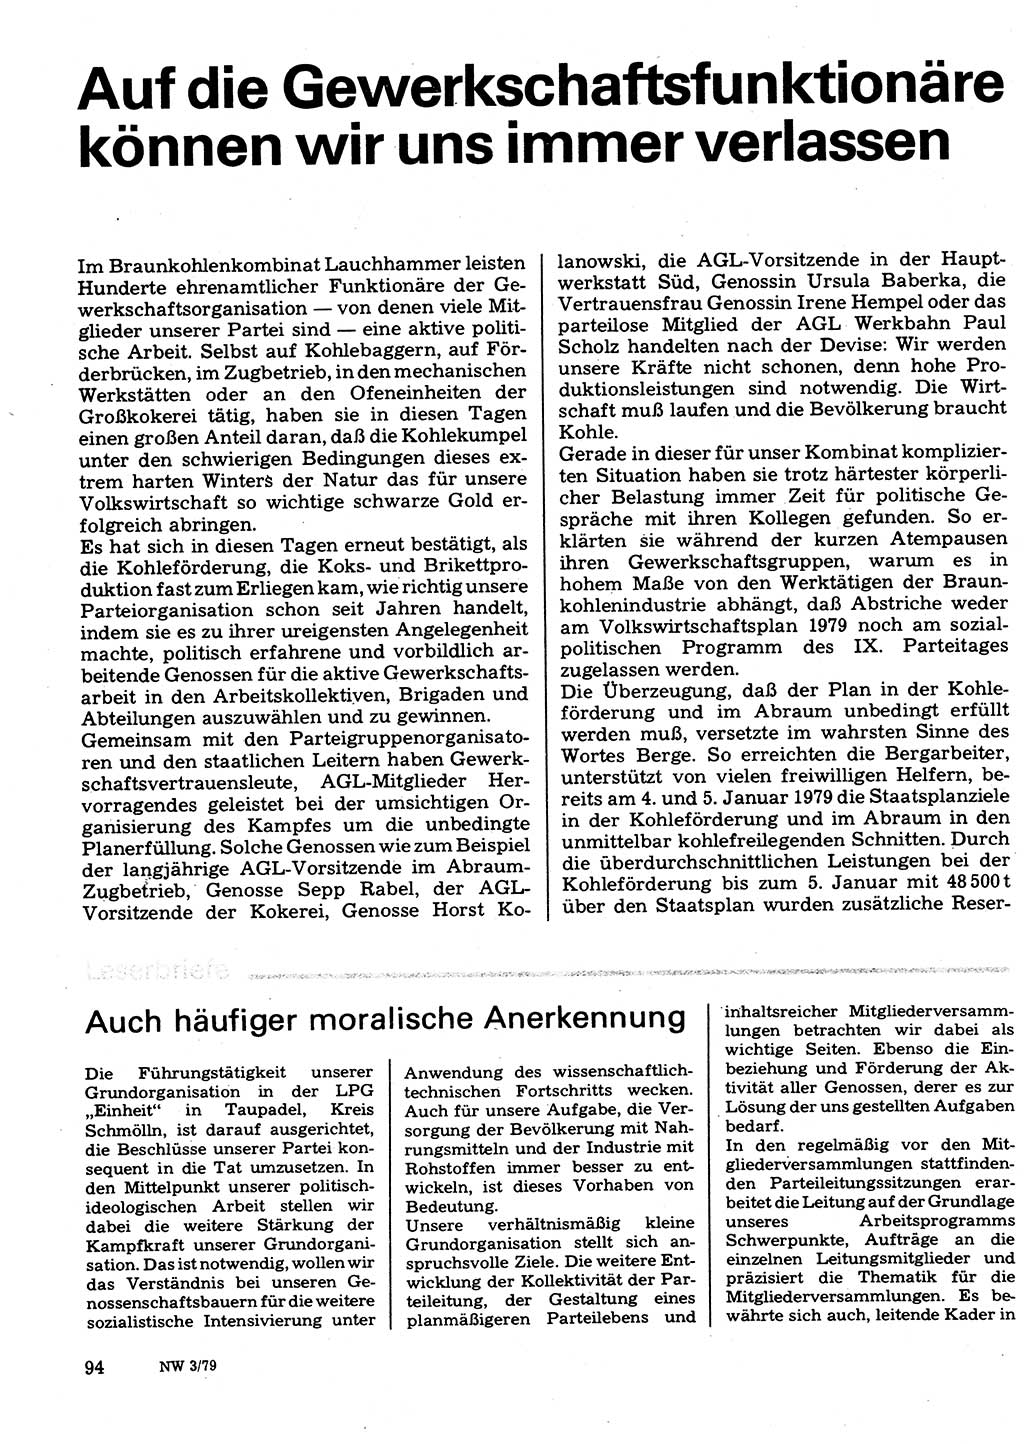 Neuer Weg (NW), Organ des Zentralkomitees (ZK) der SED (Sozialistische Einheitspartei Deutschlands) für Fragen des Parteilebens, 34. Jahrgang [Deutsche Demokratische Republik (DDR)] 1979, Seite 94 (NW ZK SED DDR 1979, S. 94)